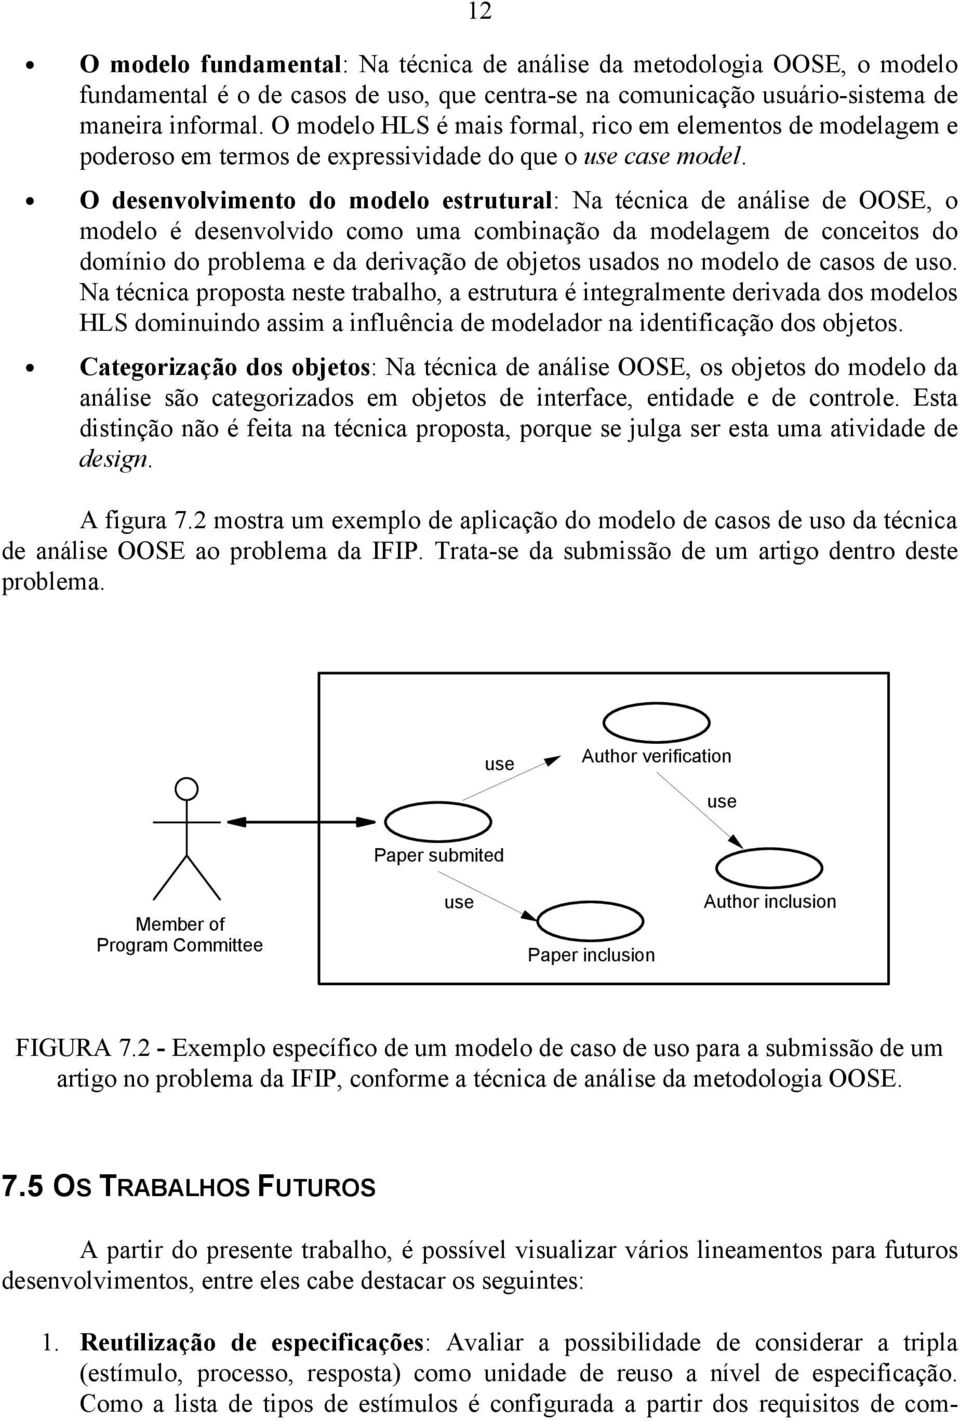 O desenvolvimento do modelo estrutural: Na técnica de análise de OOSE, o modelo é desenvolvido como uma combinação da modelagem de conceitos do domínio do problema e da derivação de objetos usados no